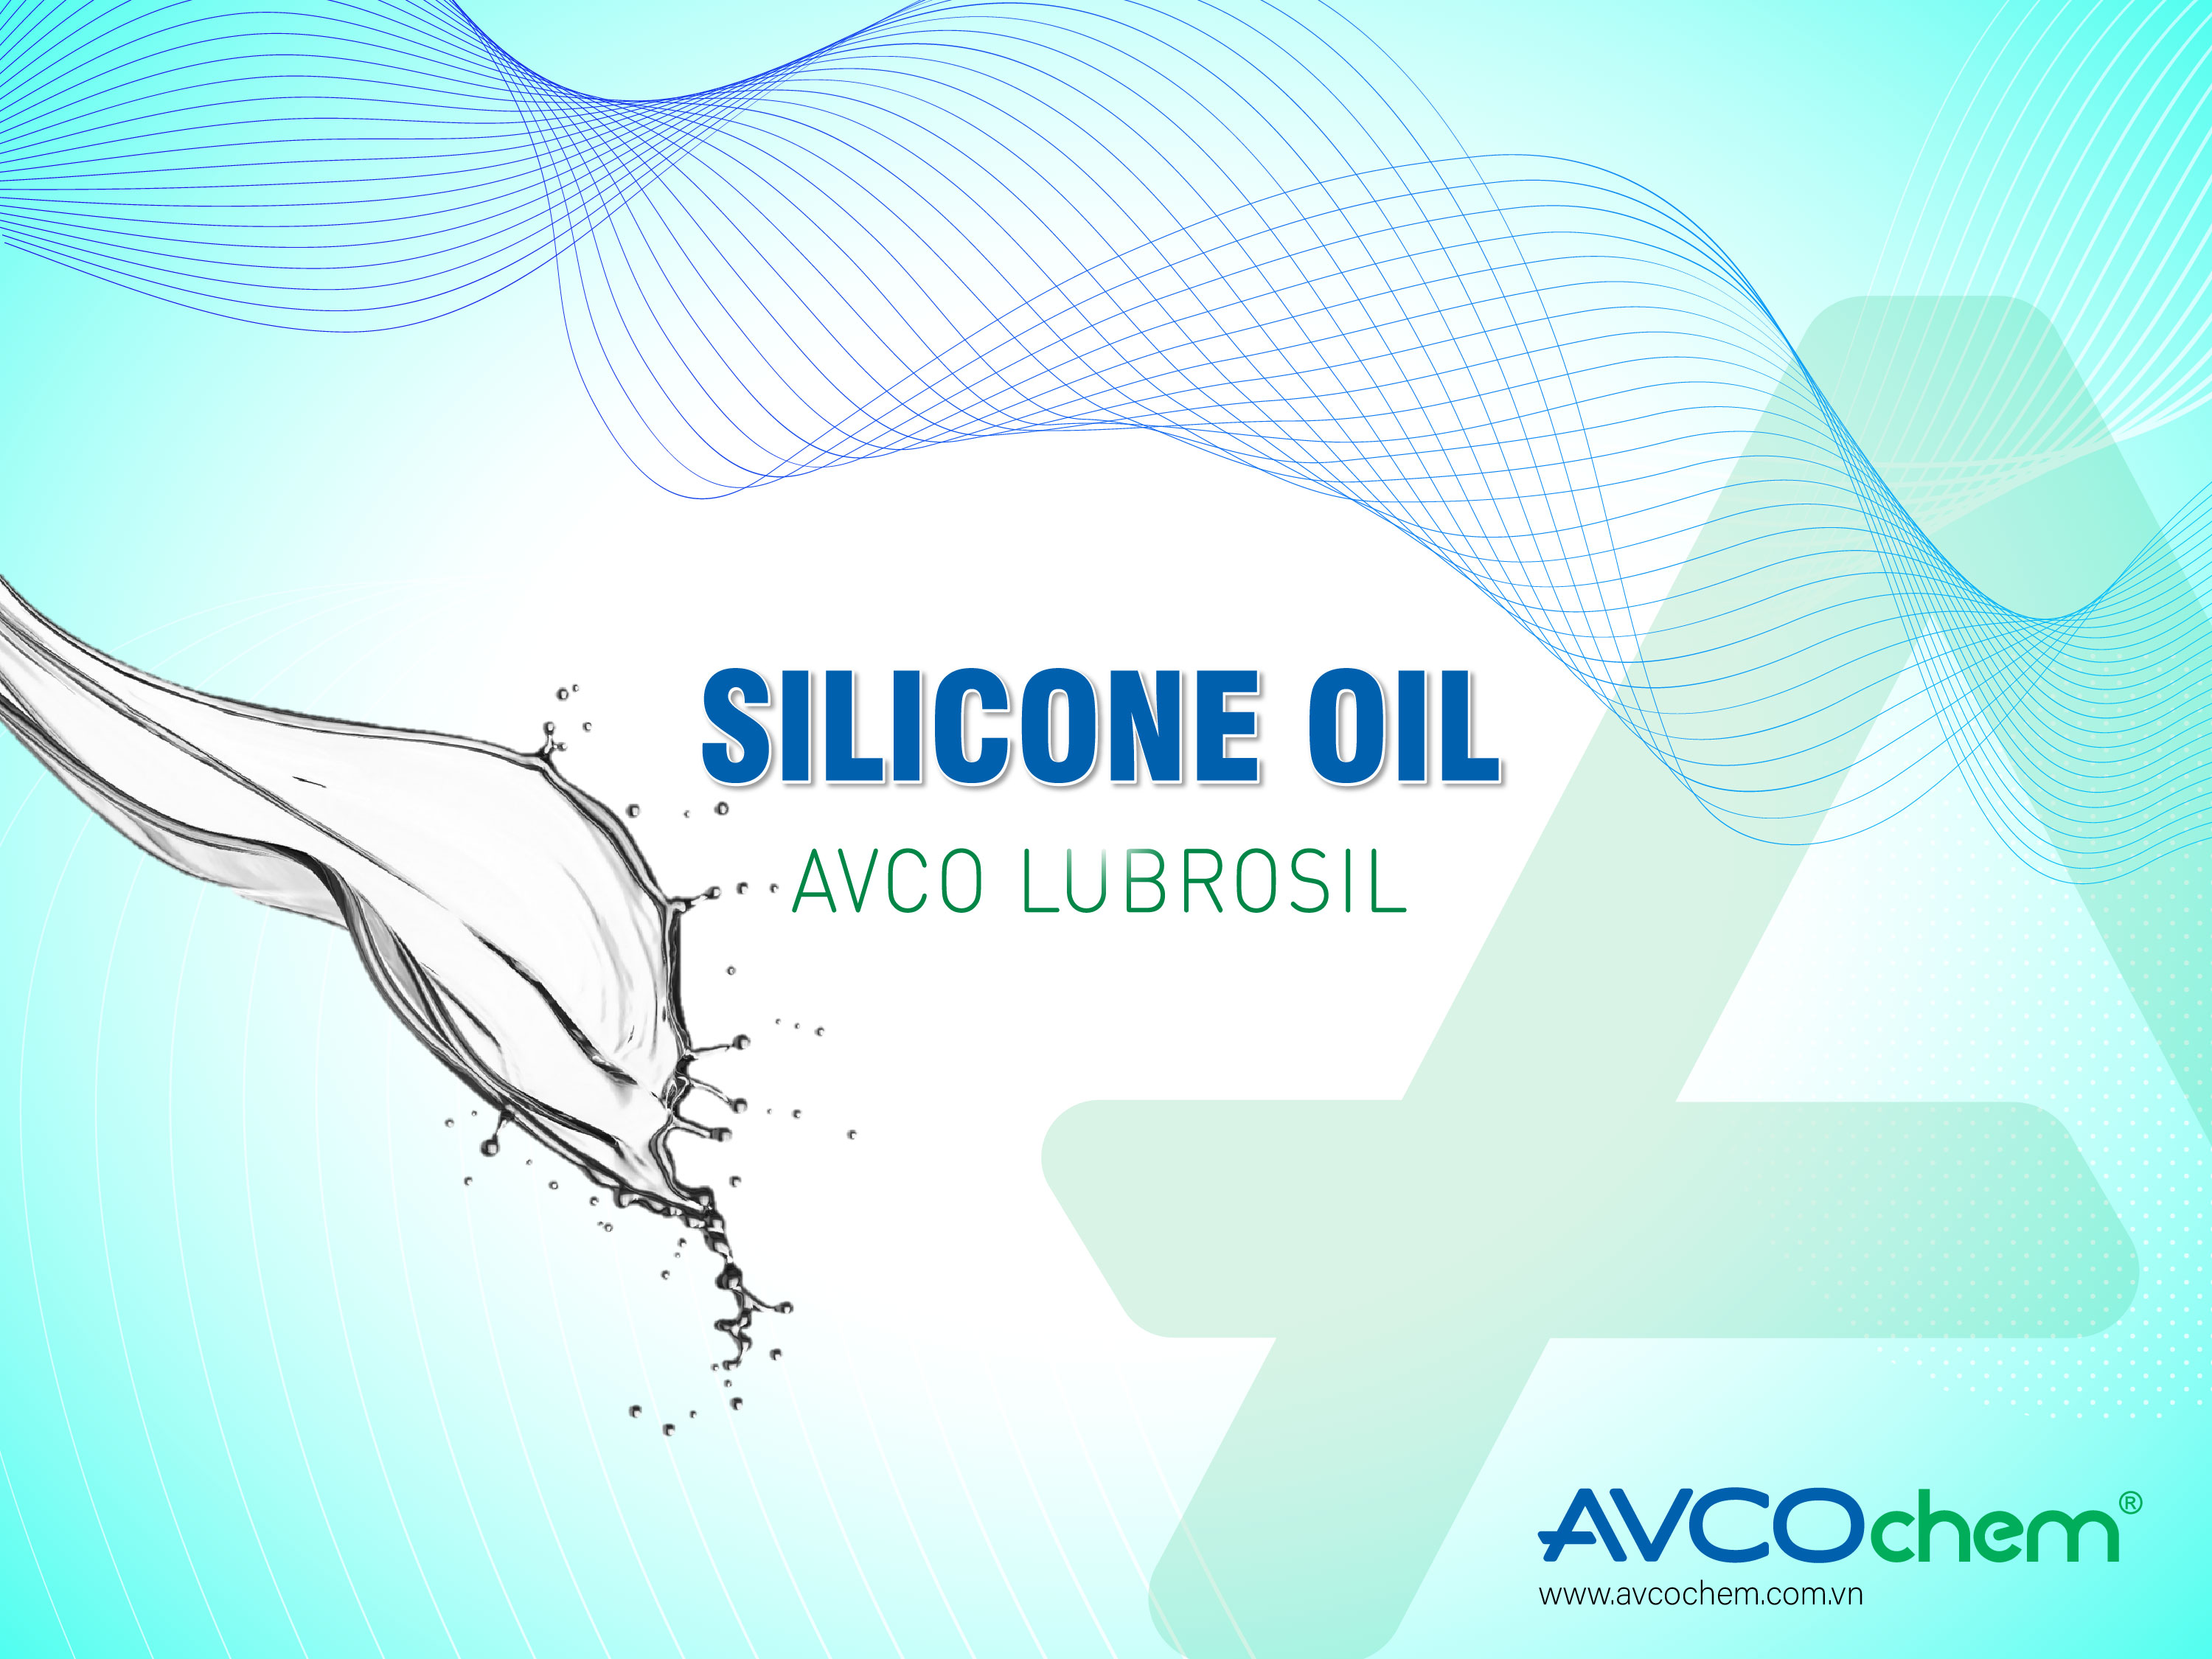 SILICONE OIL - AVCO LUBROSIL